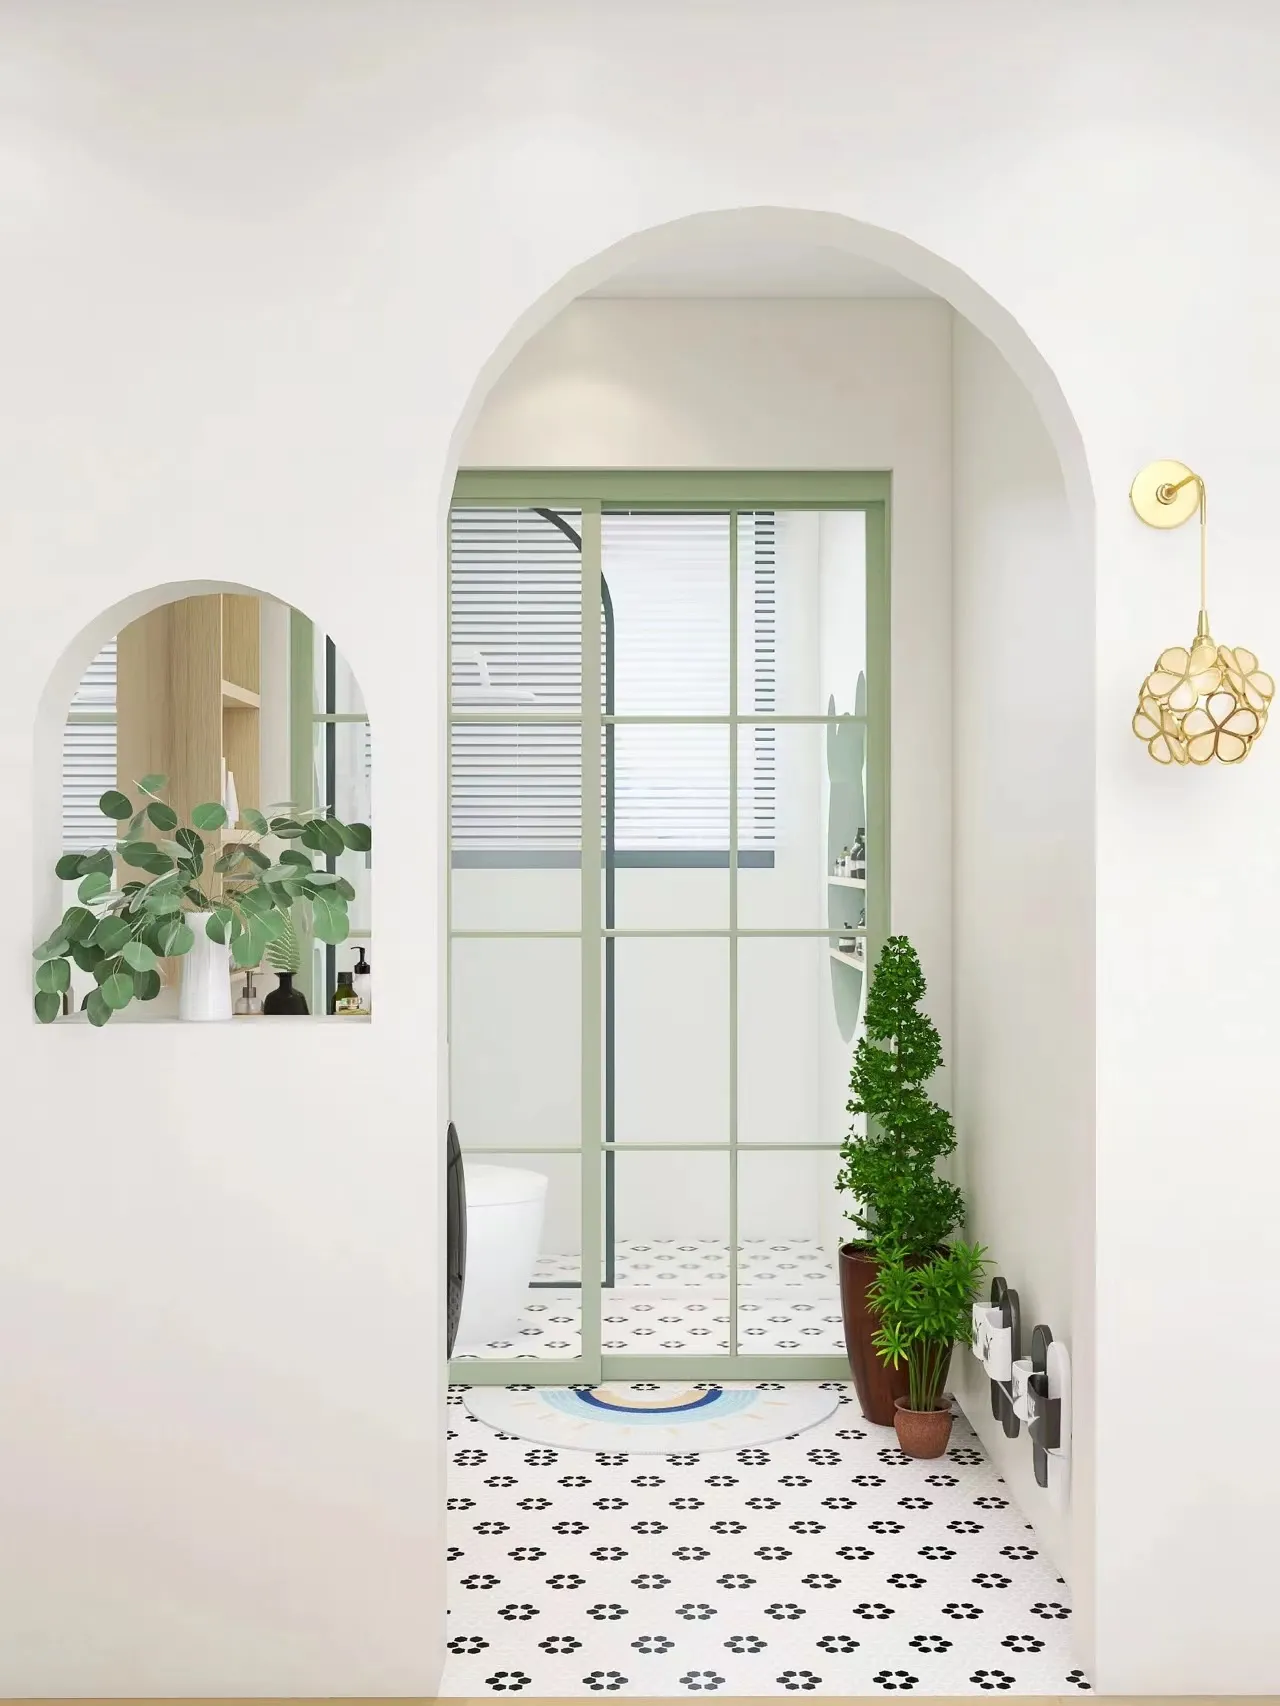 浅绿色系浴室，美到想住在厕所里
微水泥搭配清新的绿色，是春天的配色，简约又高级，超级清新~ #一抹撩人的绿色#